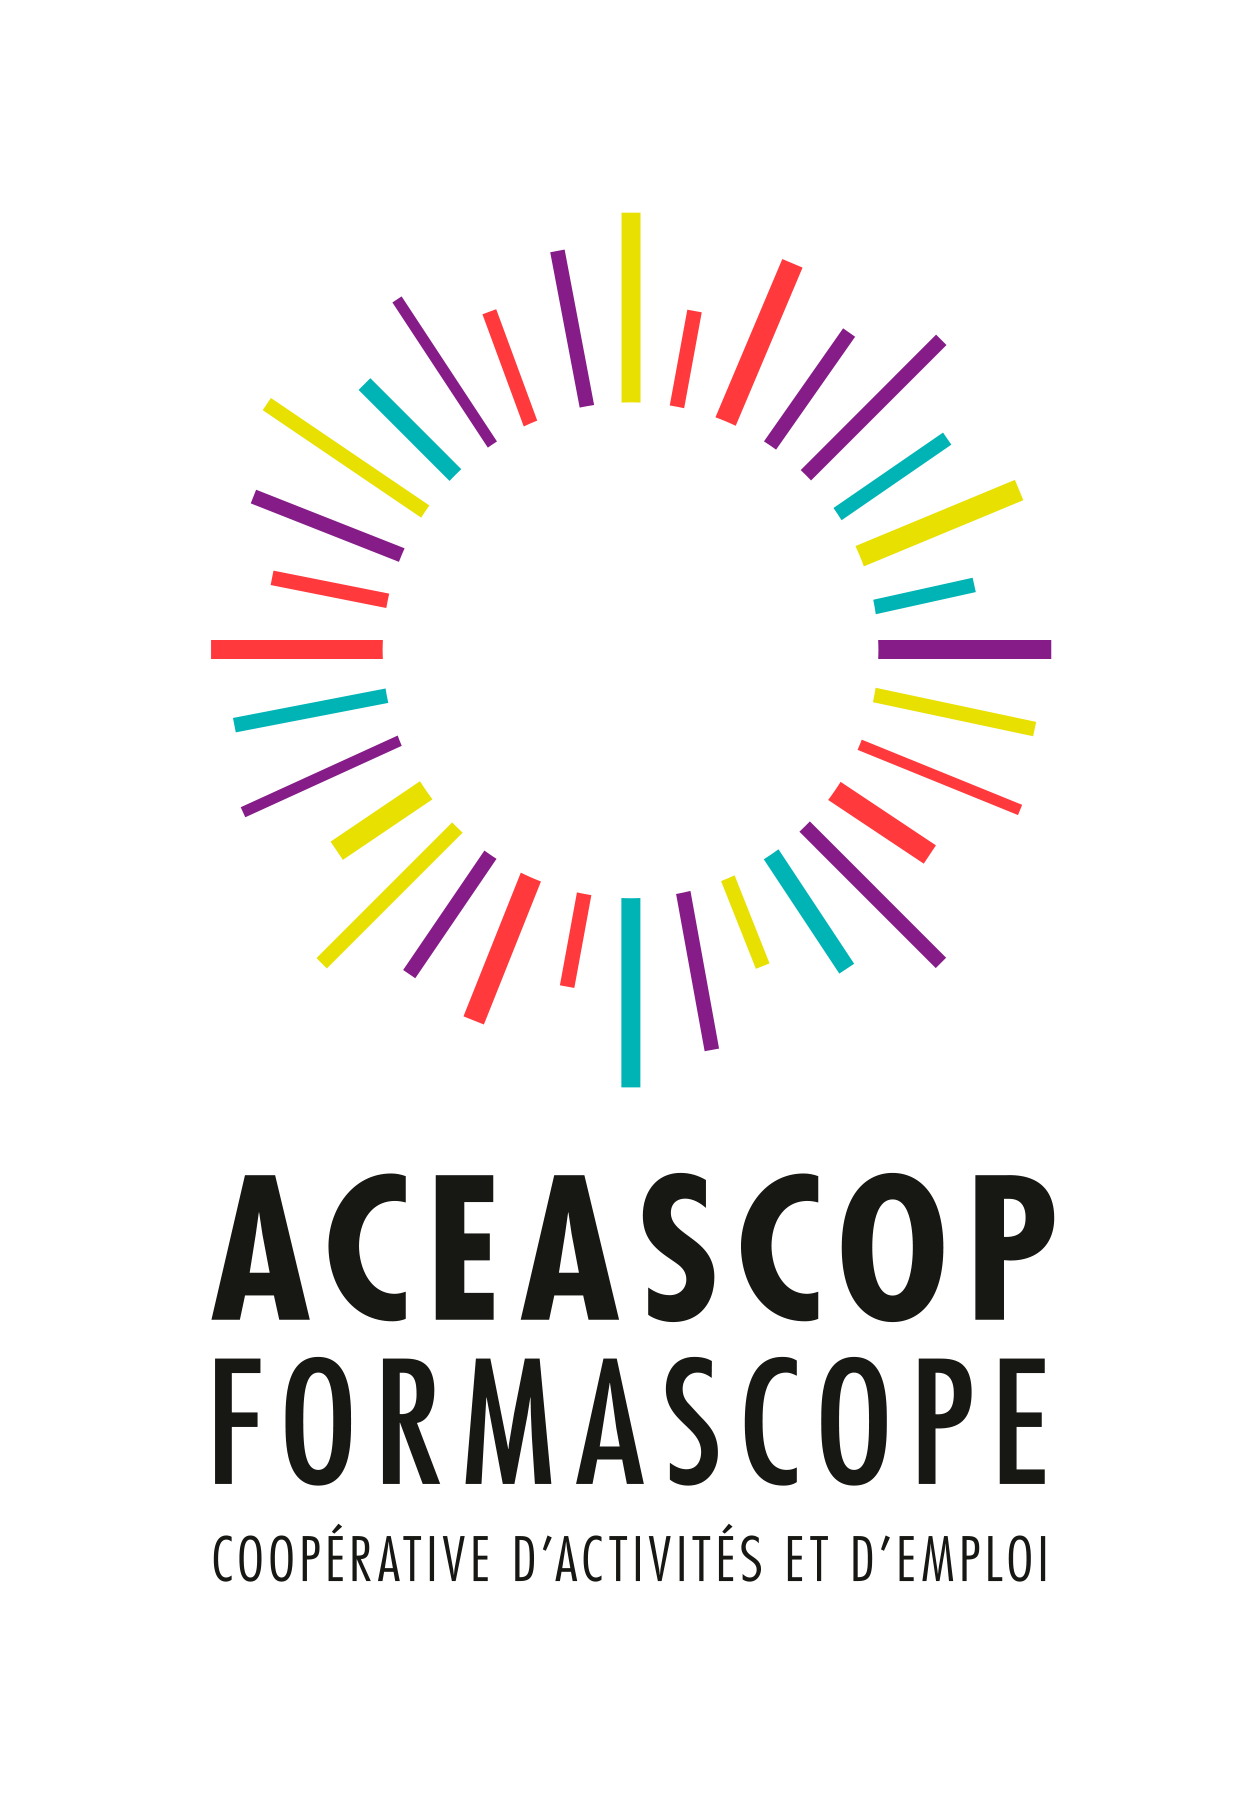 Aceascop